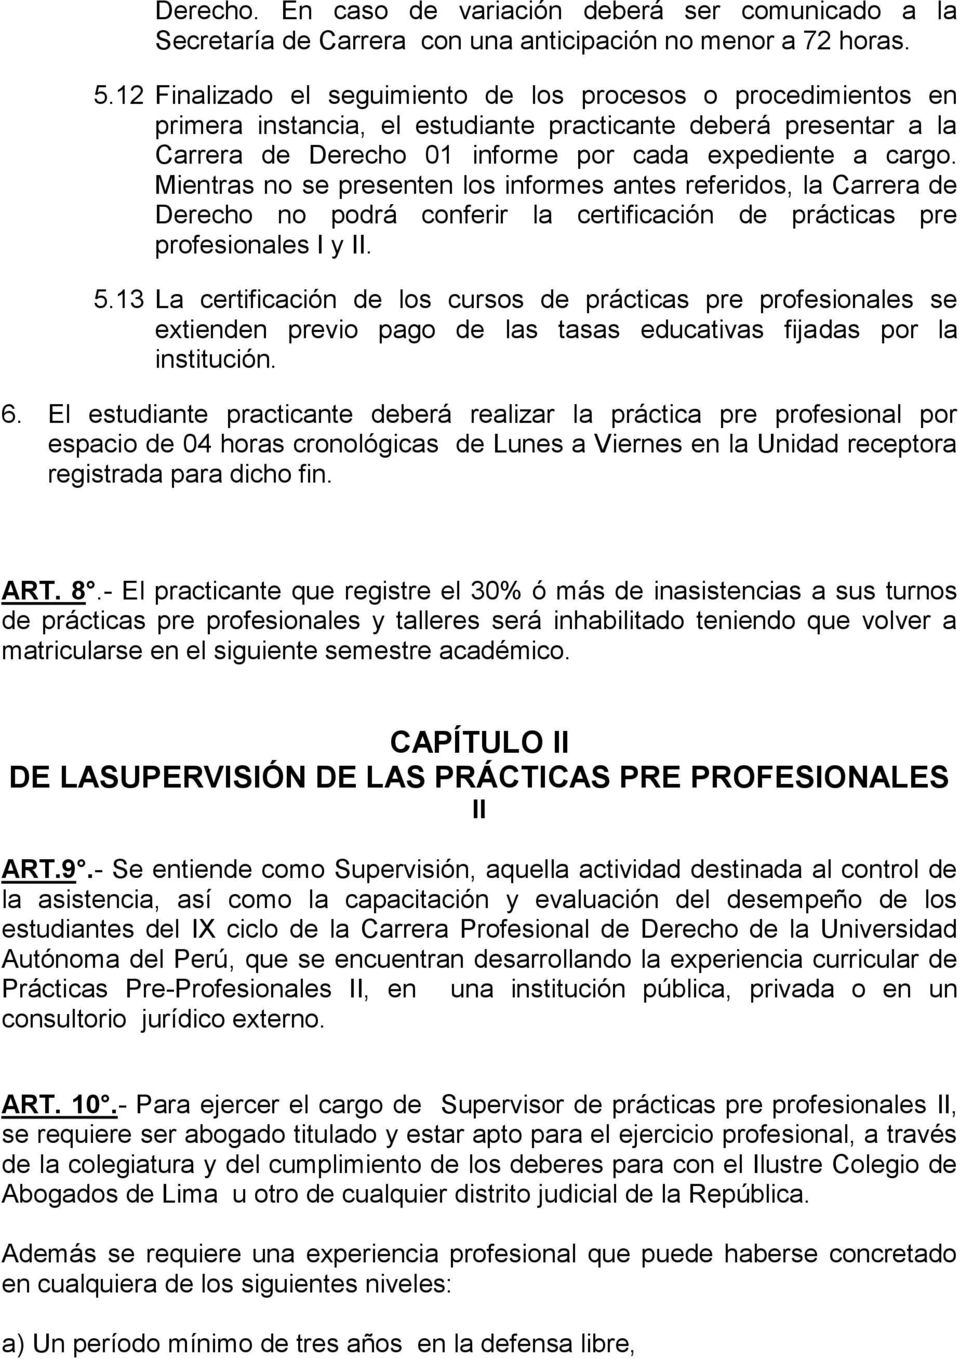 Mientras no se presenten los informes antes referidos, la Carrera de Derecho no podrá conferir la certificación de prácticas pre profesionales I y II. 5.